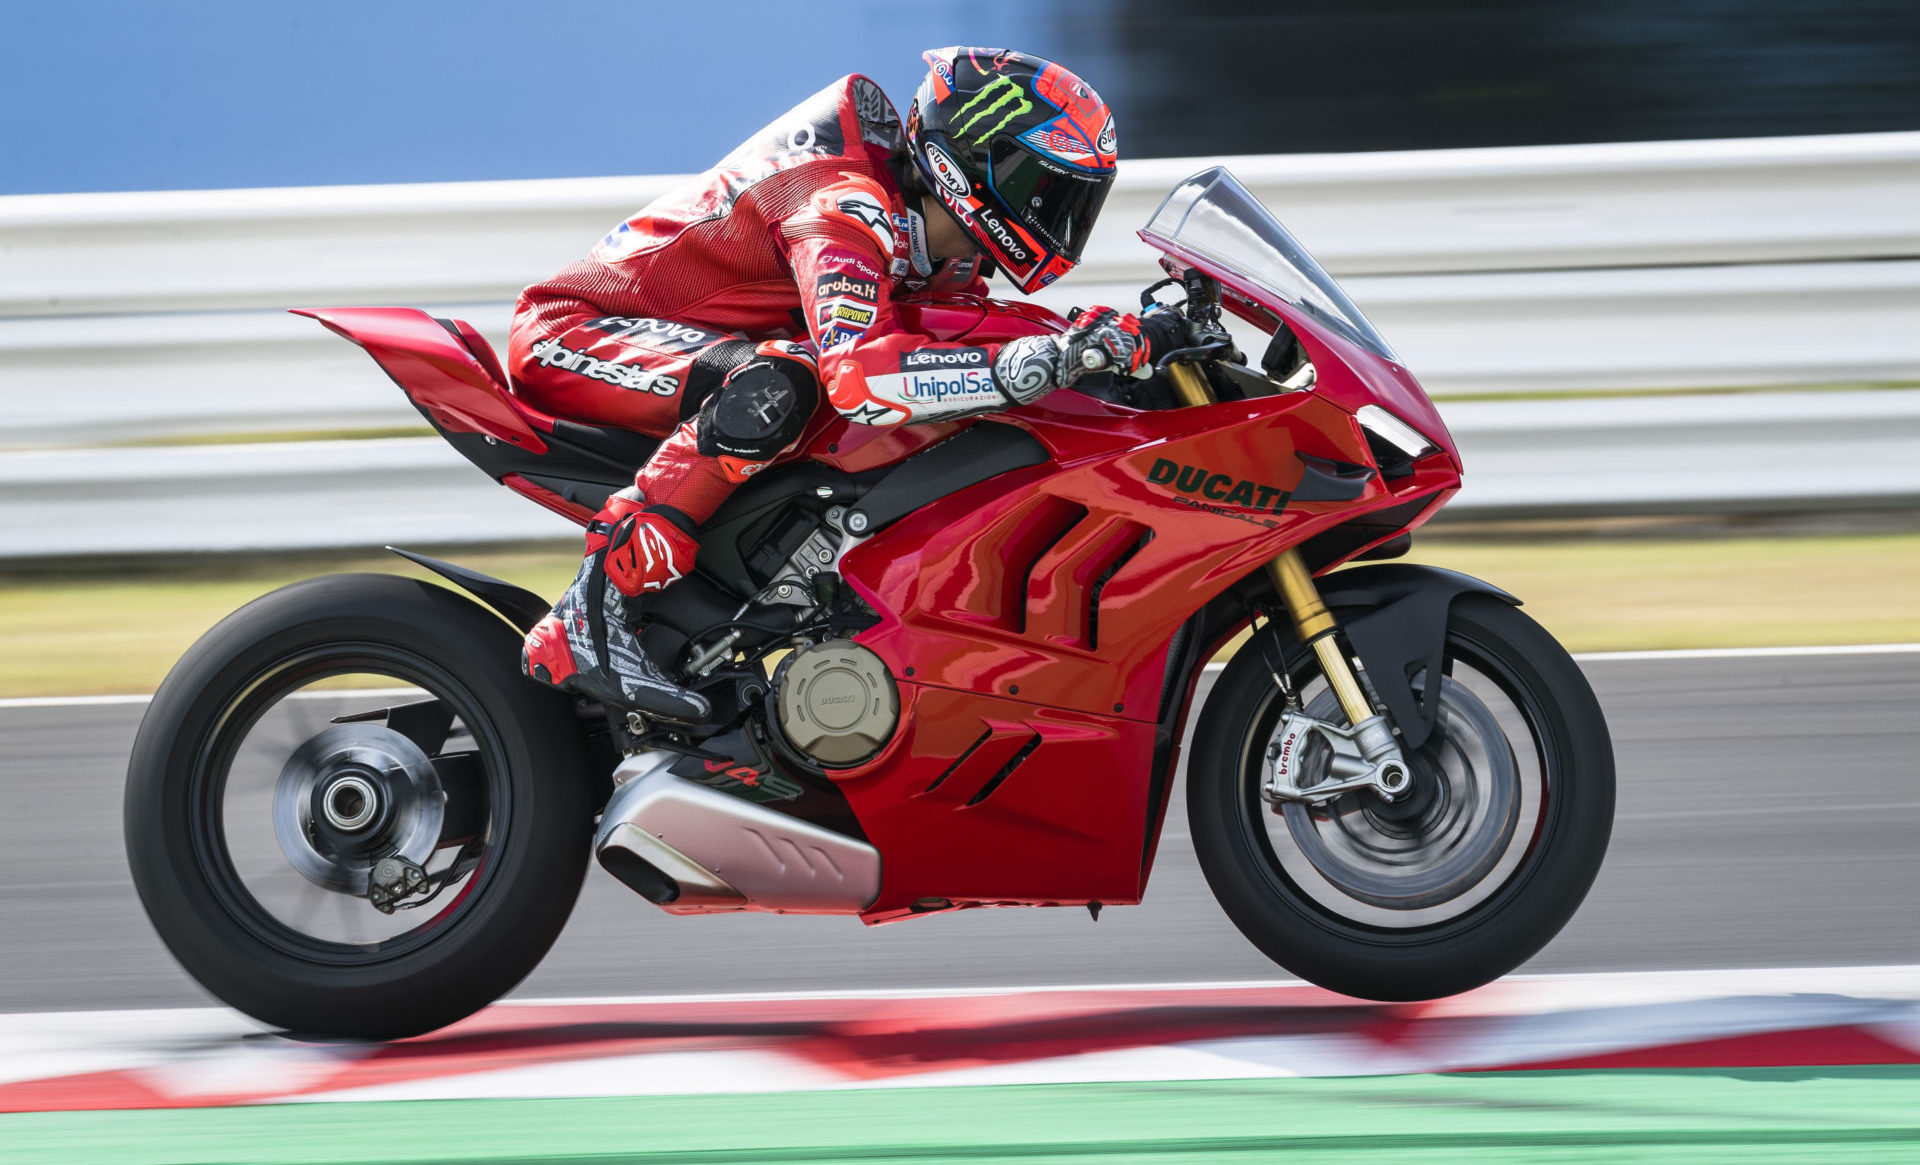 Francesco Bagnaia riding a 2022 Ducati Panigale V4 S. Photo courtesy Ducati.